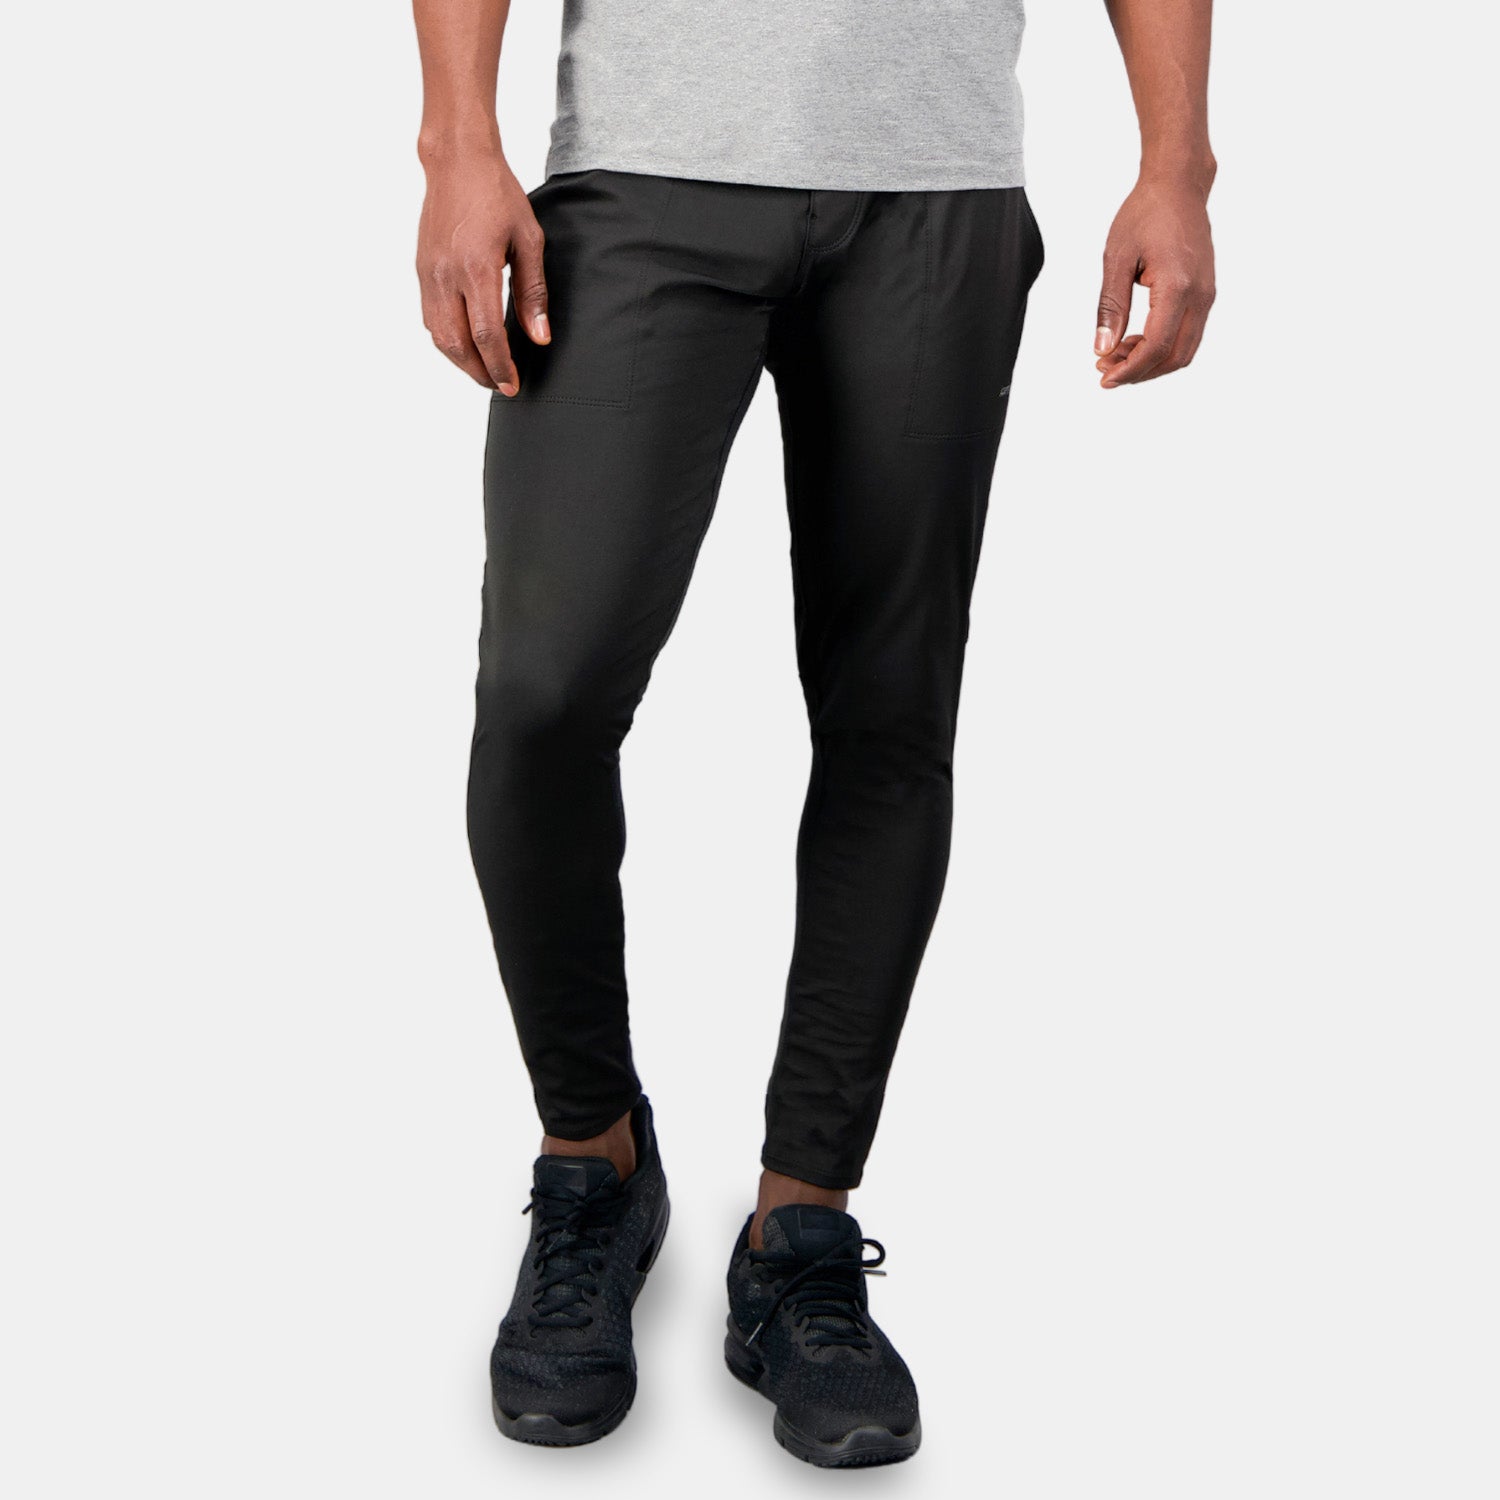 Artefit compressie broek zwart heren jogger